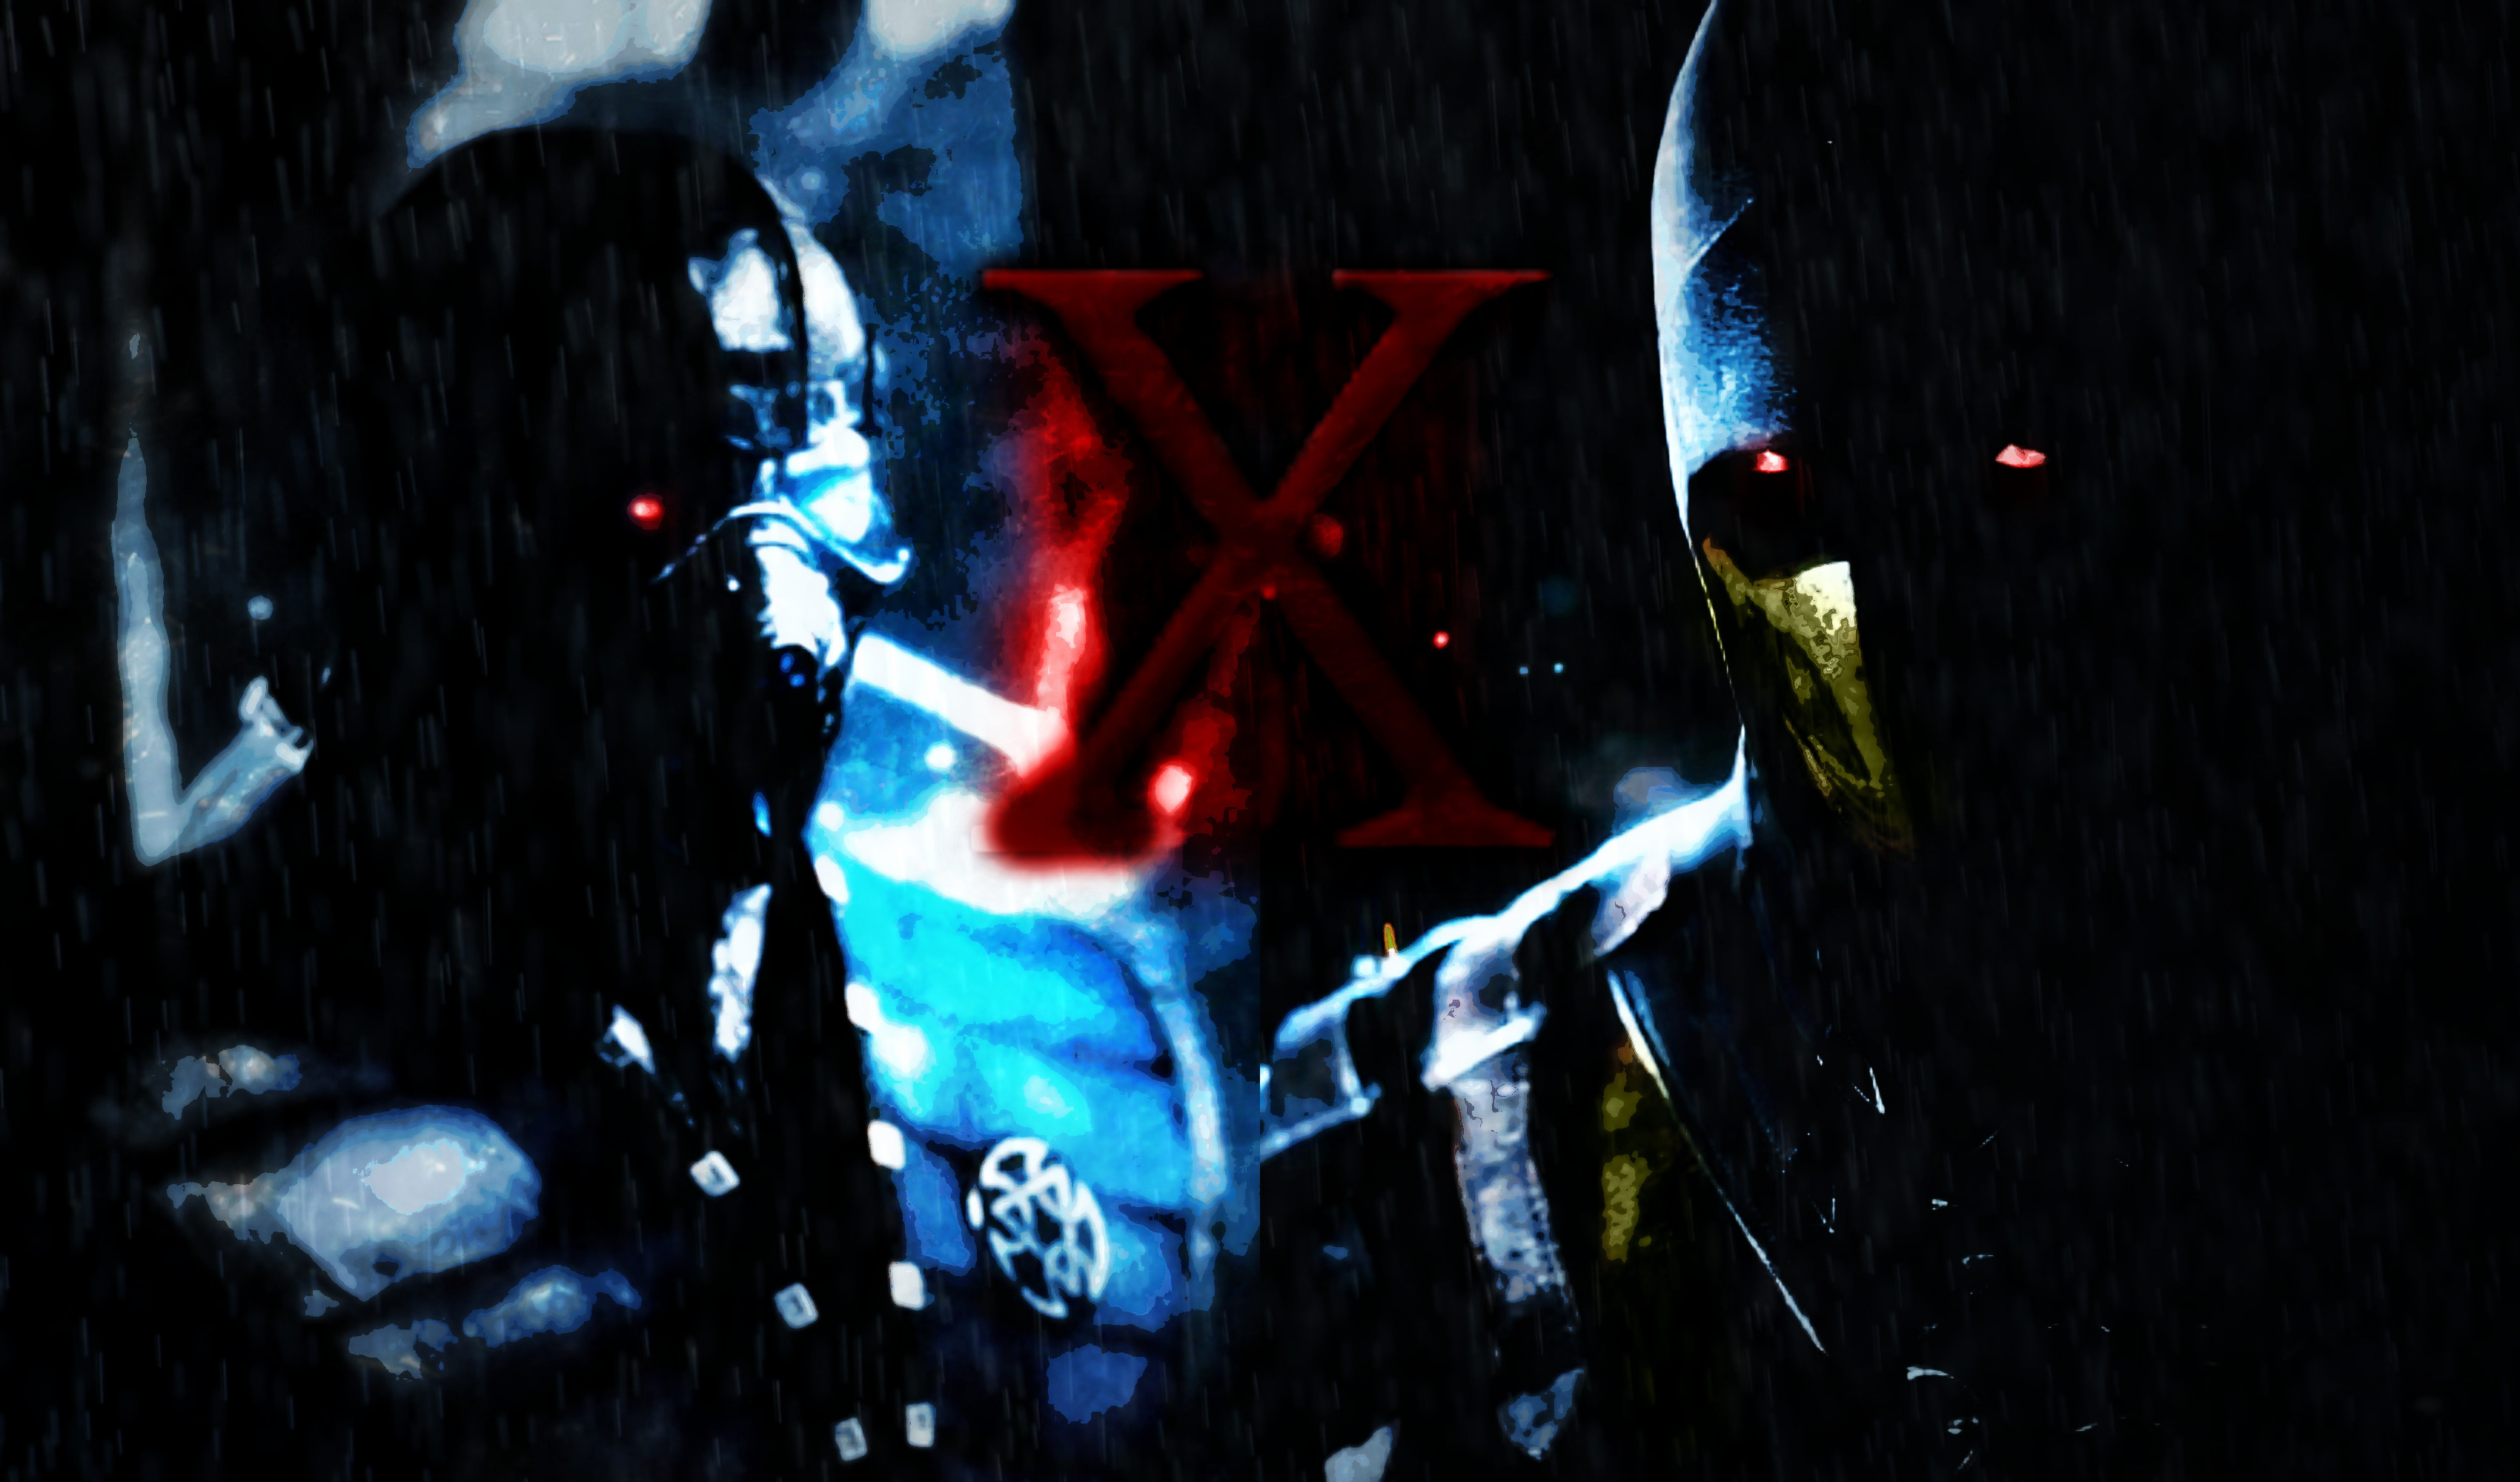 3400x2000 ... Mortal Kombat X: Sub Zero V. Scorpion (Wallpaper) by TheDarkRinnegan